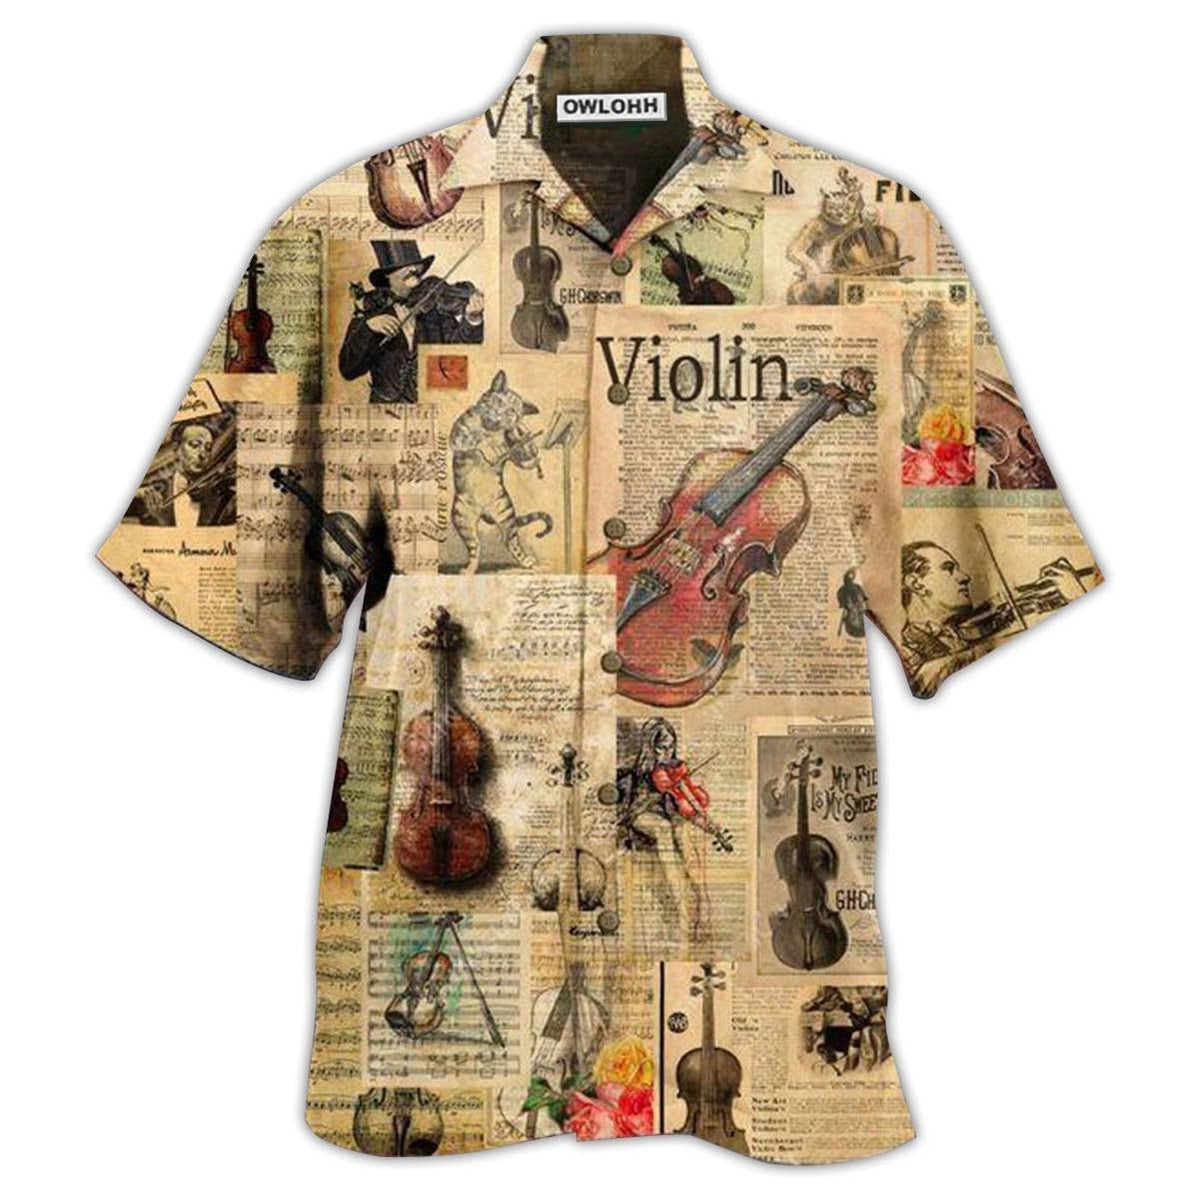 Hawaiian Shirt / Adults / S Violin Love Life Style Vintage Style - Hawaiian Shirt - Owls Matrix LTD